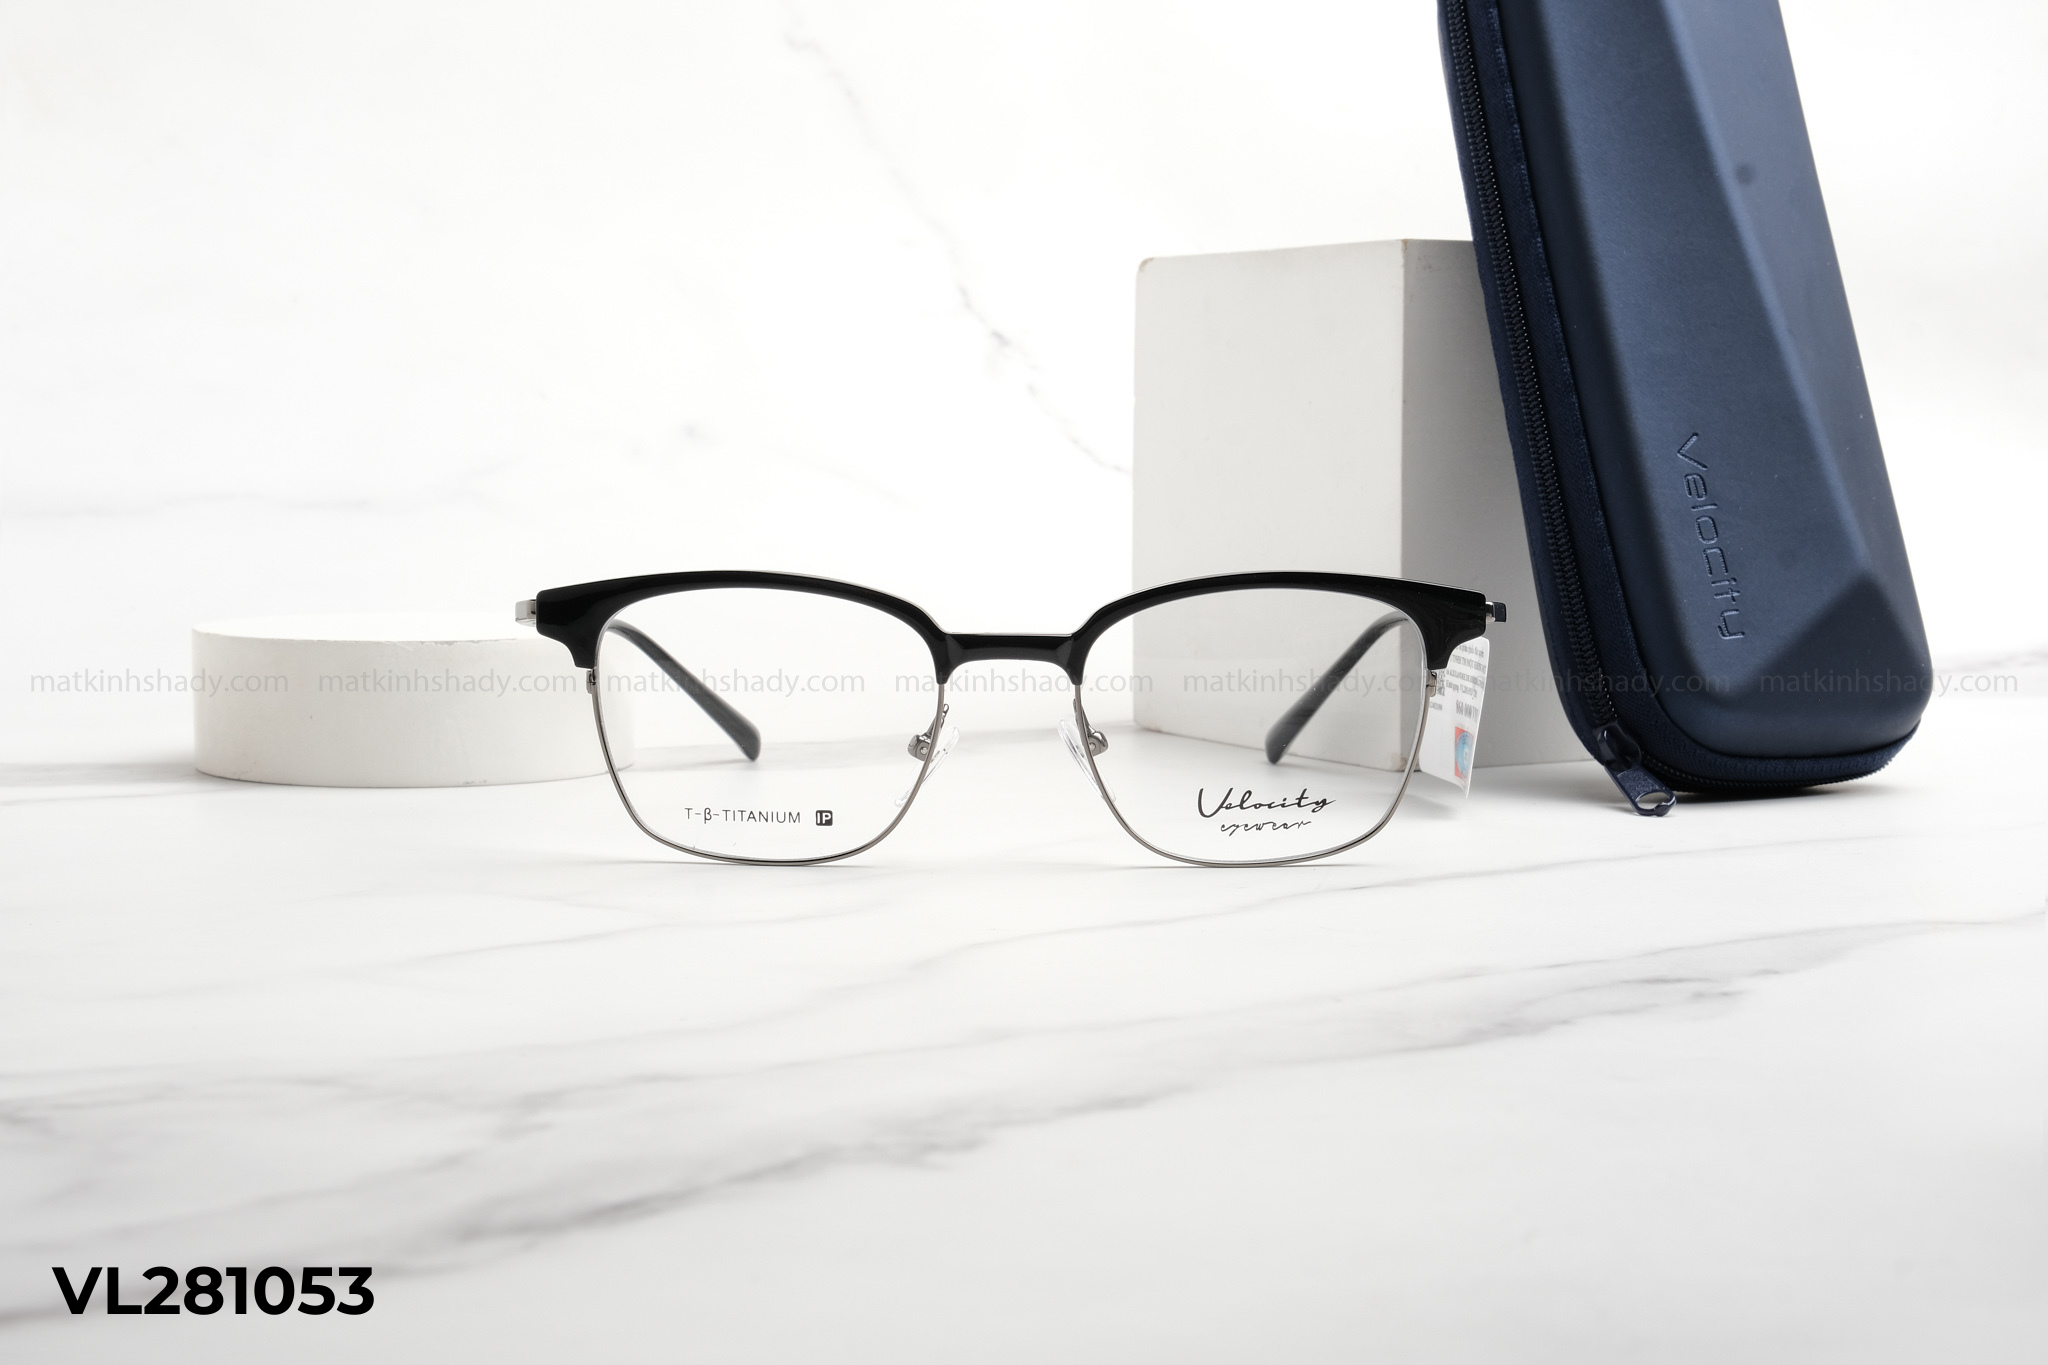  Velocity Eyewear - Glasses - VL281053 